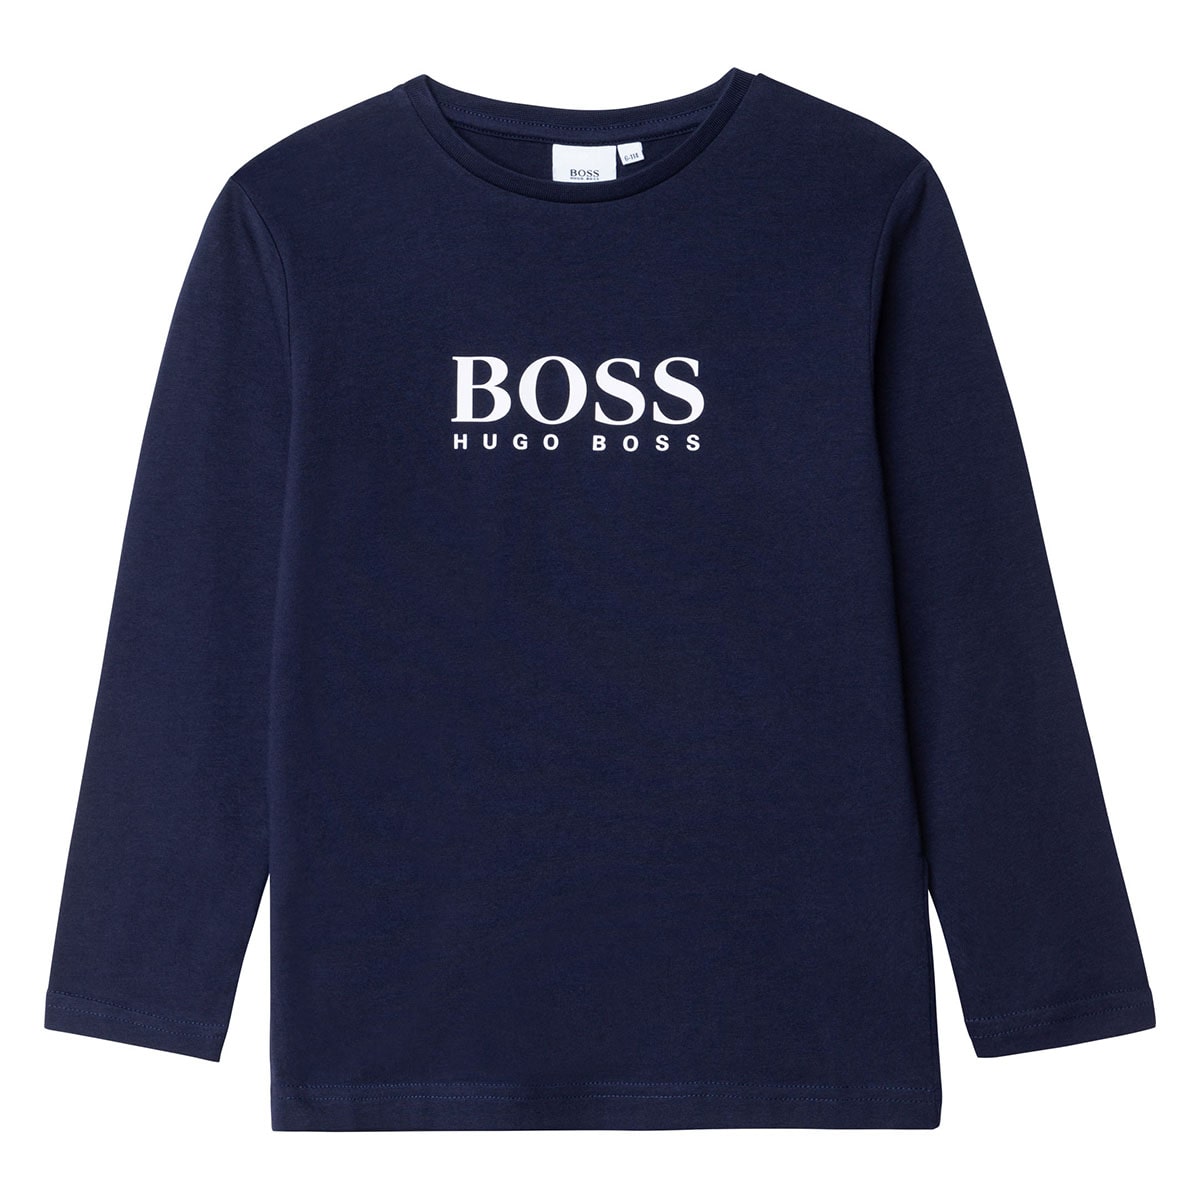 חולצת טי שרט BOSS ארוכה לוגו קלאסי לילדים